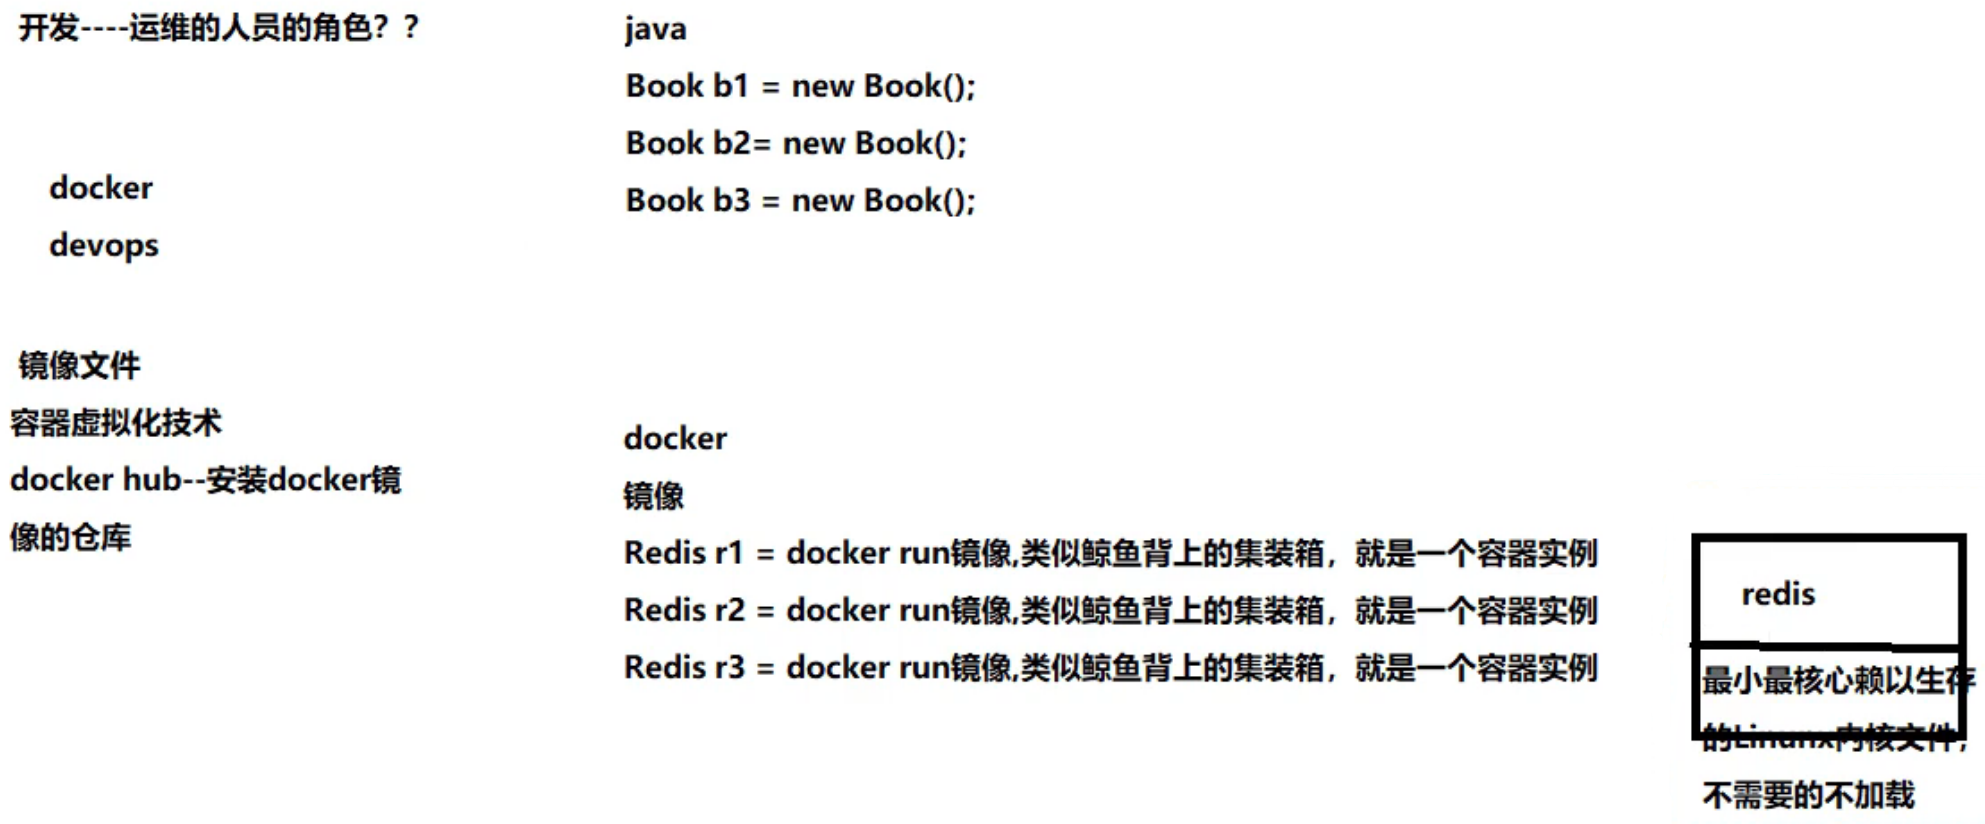 尚硅谷Docker实战教程-笔记01【理念简介、官网介绍、平台入门图解、平台架构图解】